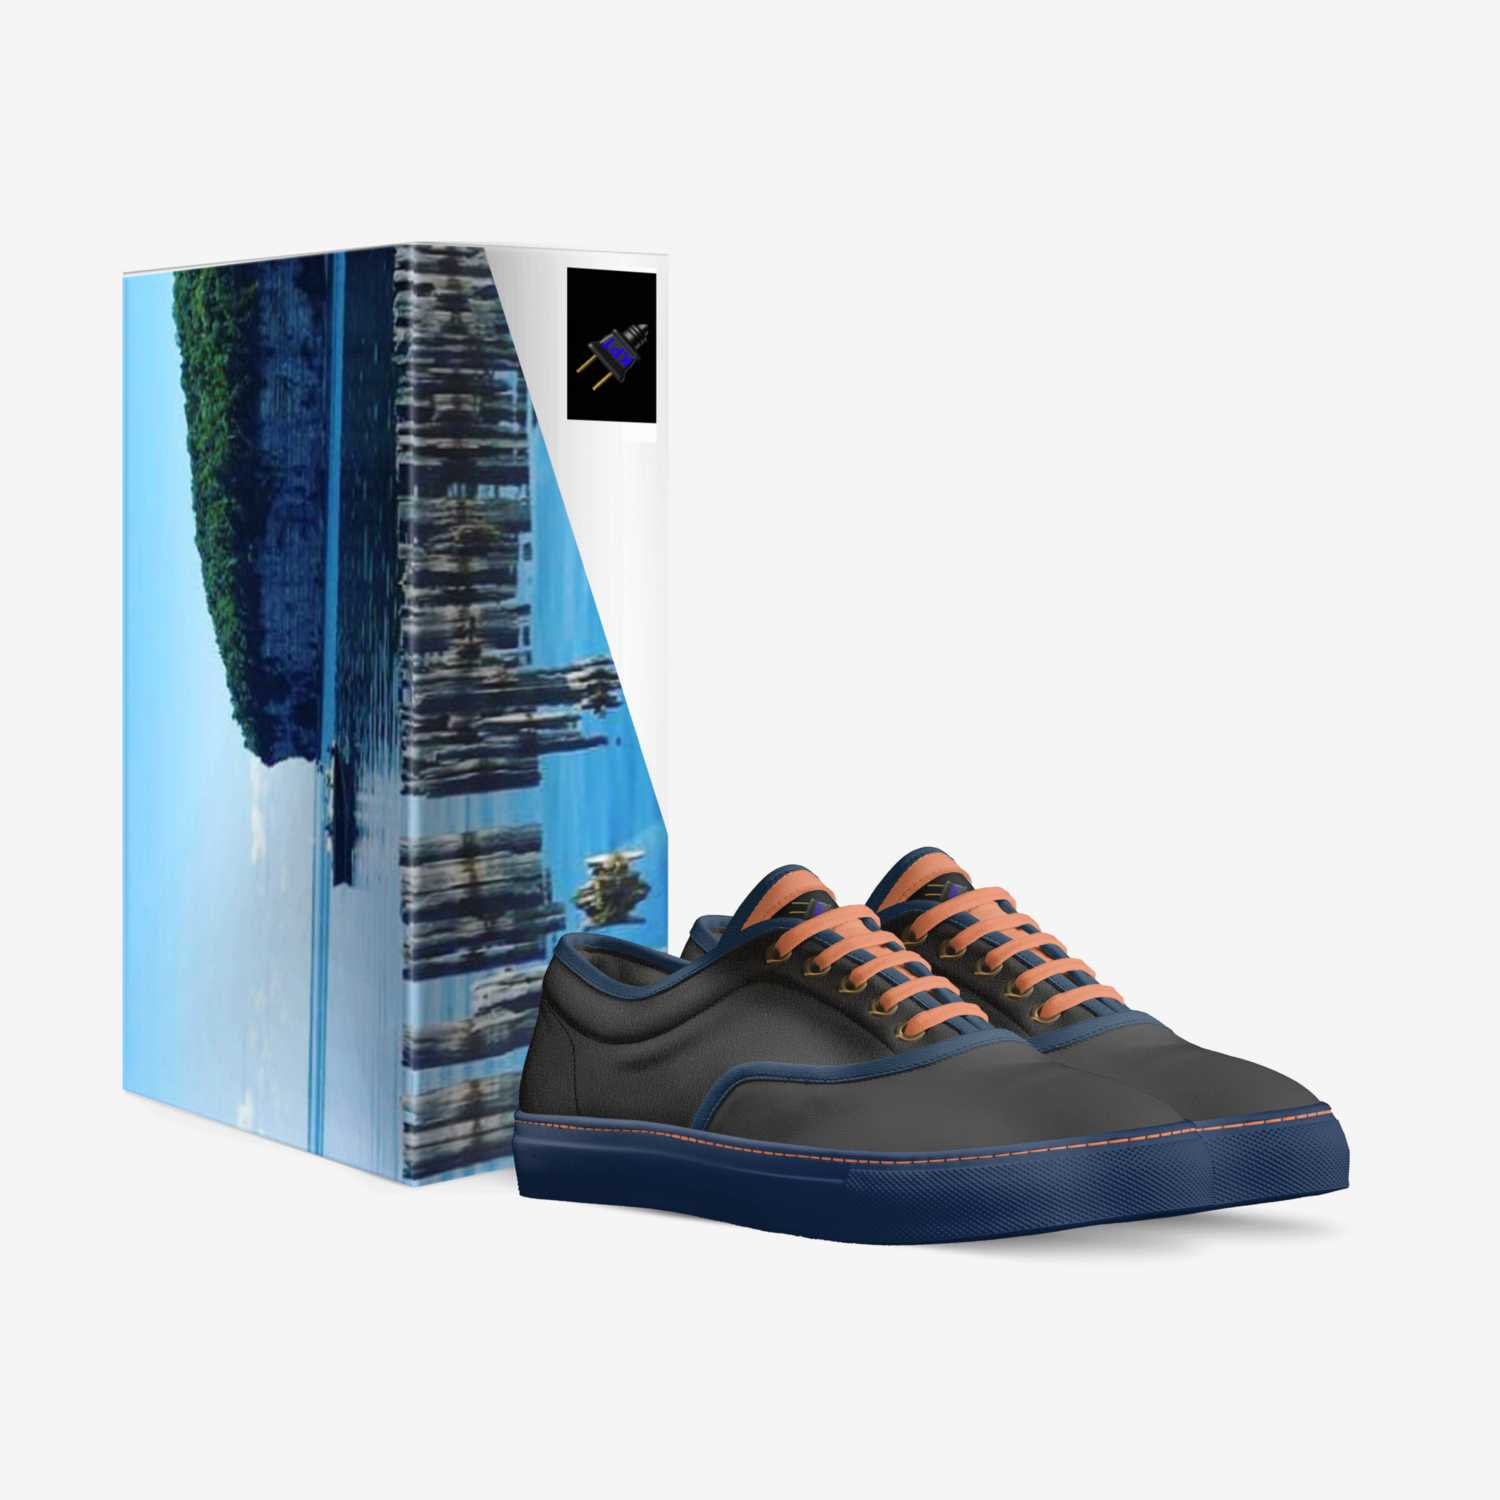 LeBlanc enp custom made in Italy shoes by Keaton Leblanc | Box view